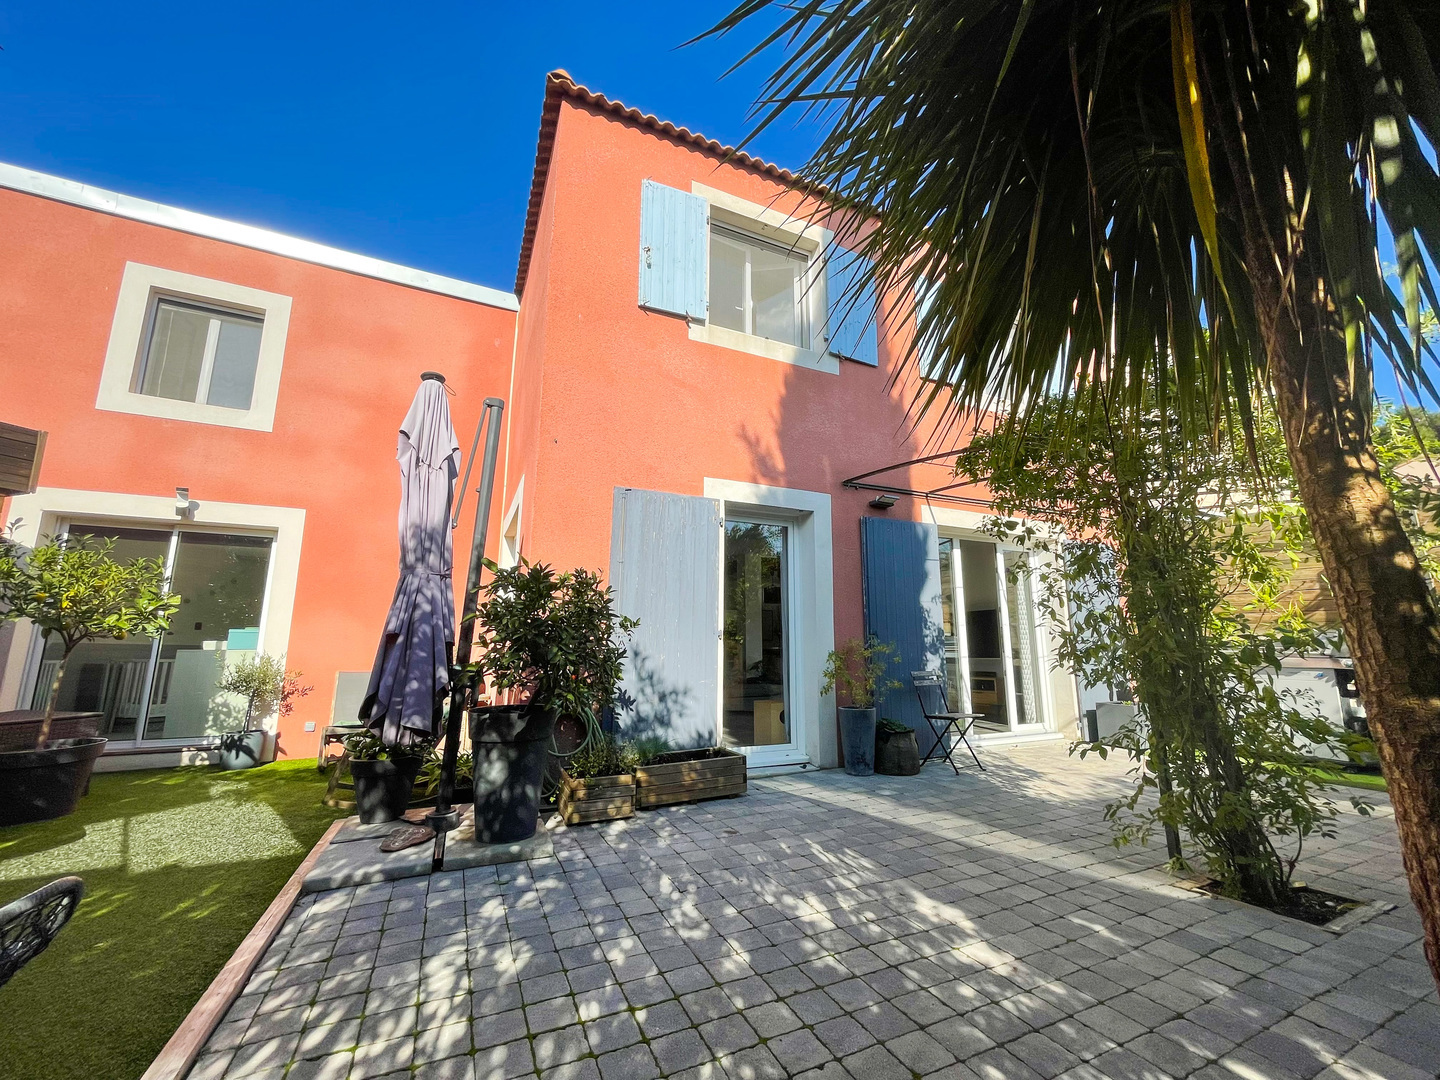 Homki - Vente Maison/villa  de 130.0 m² à Martigues 13500